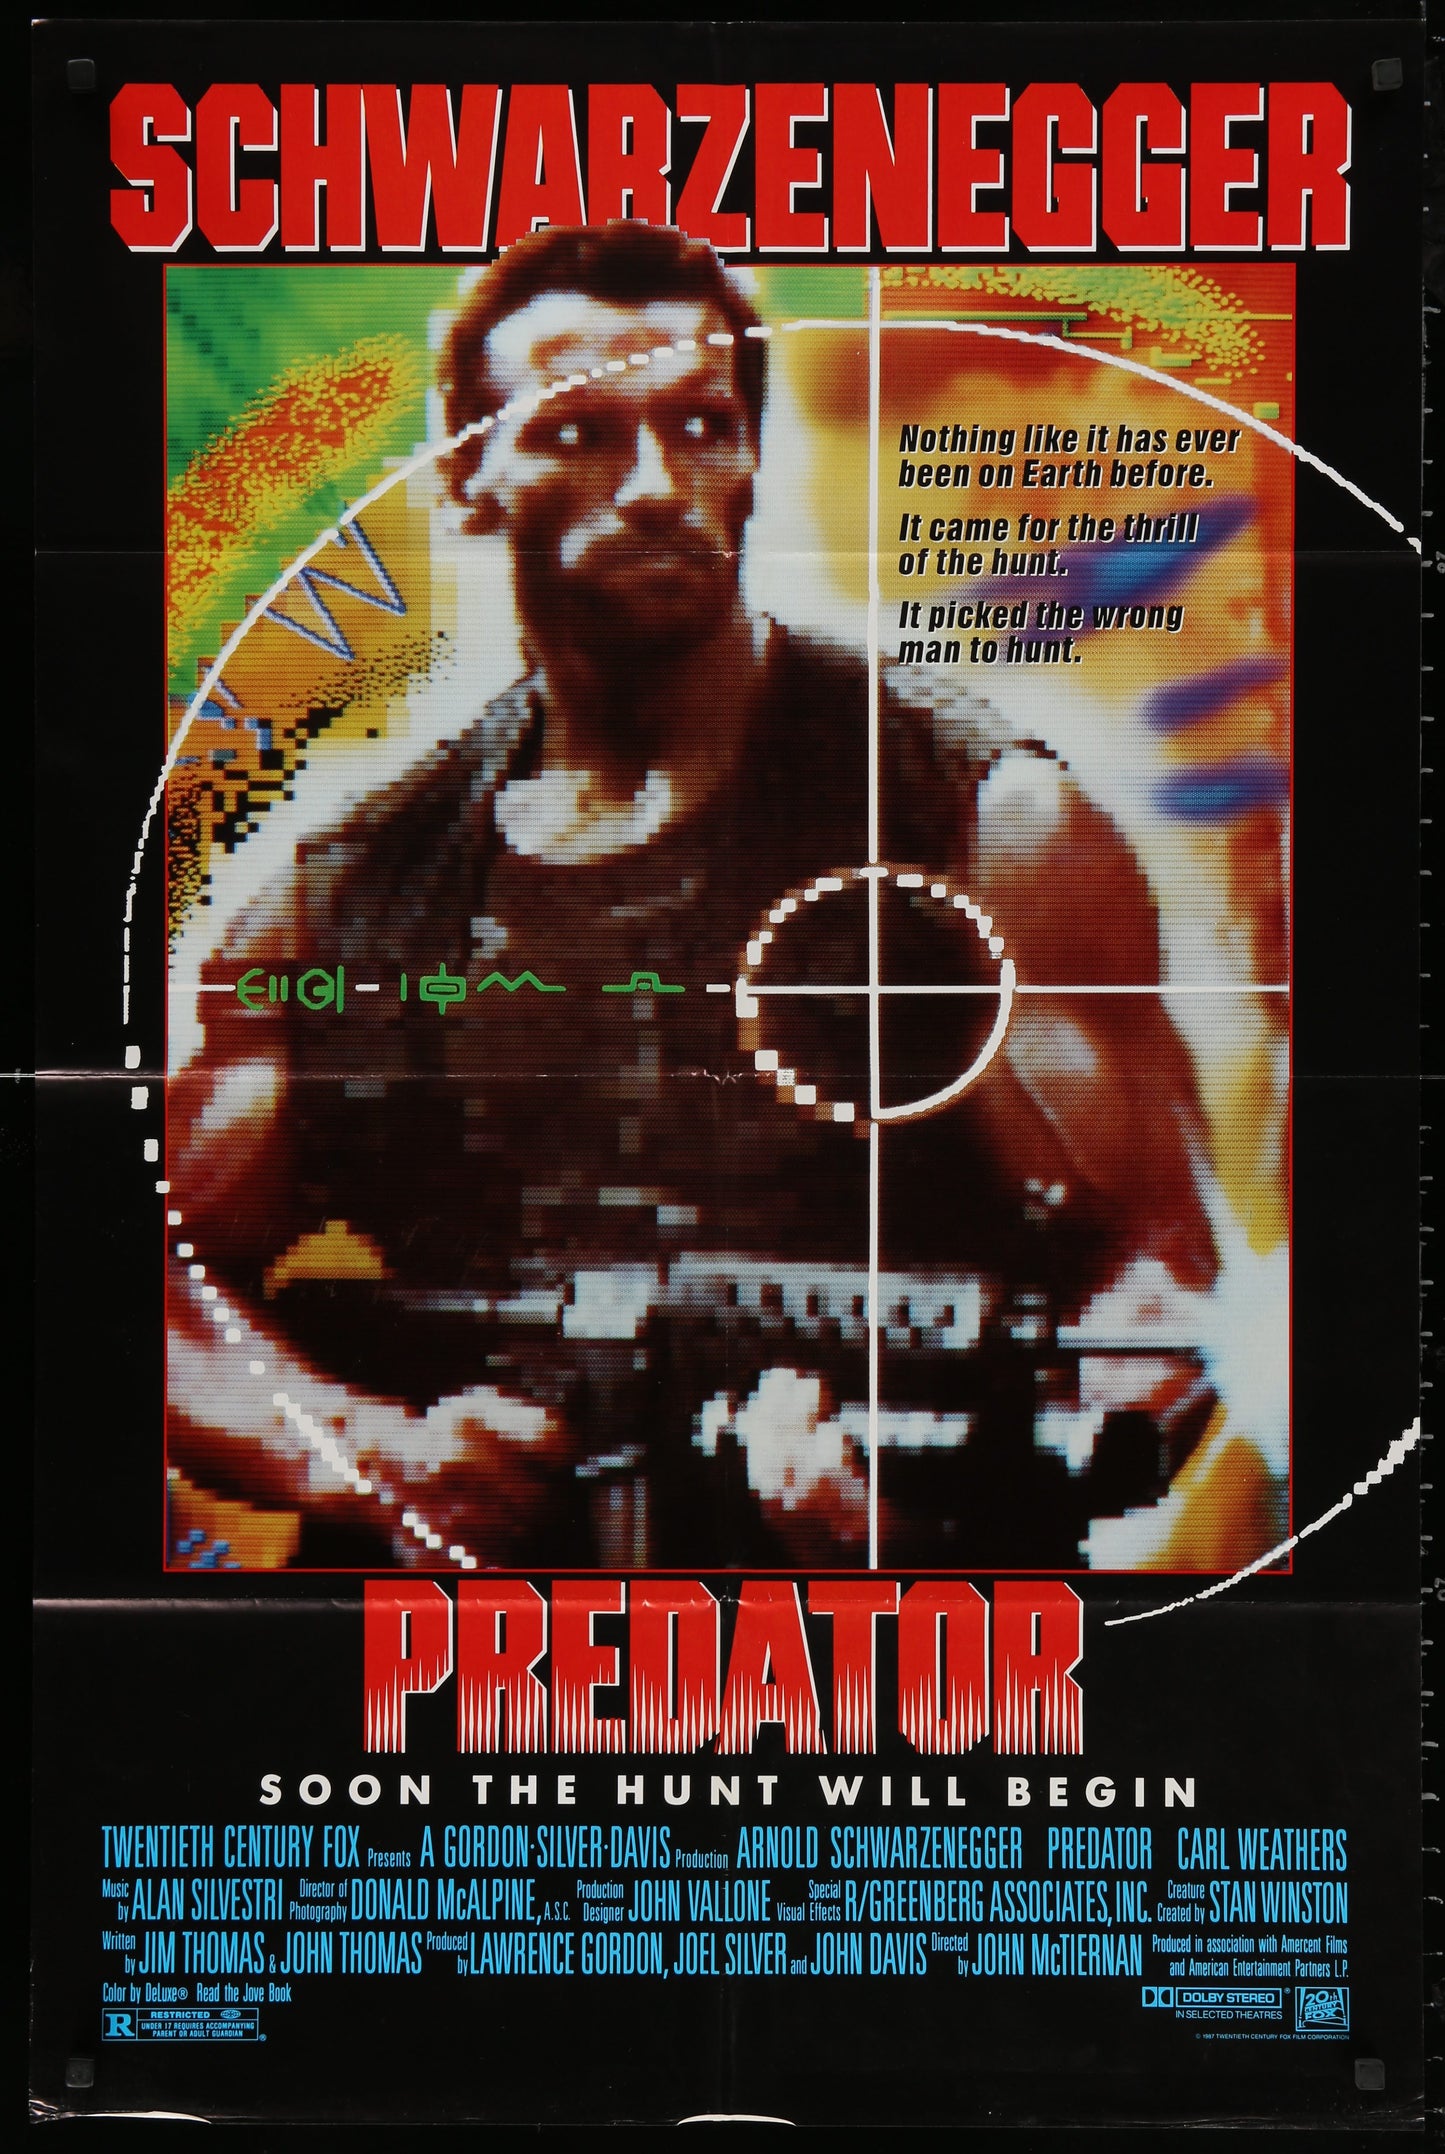 Predator US One Sheet (1987) - ORIGINAL RELEASE - posterpalace.com